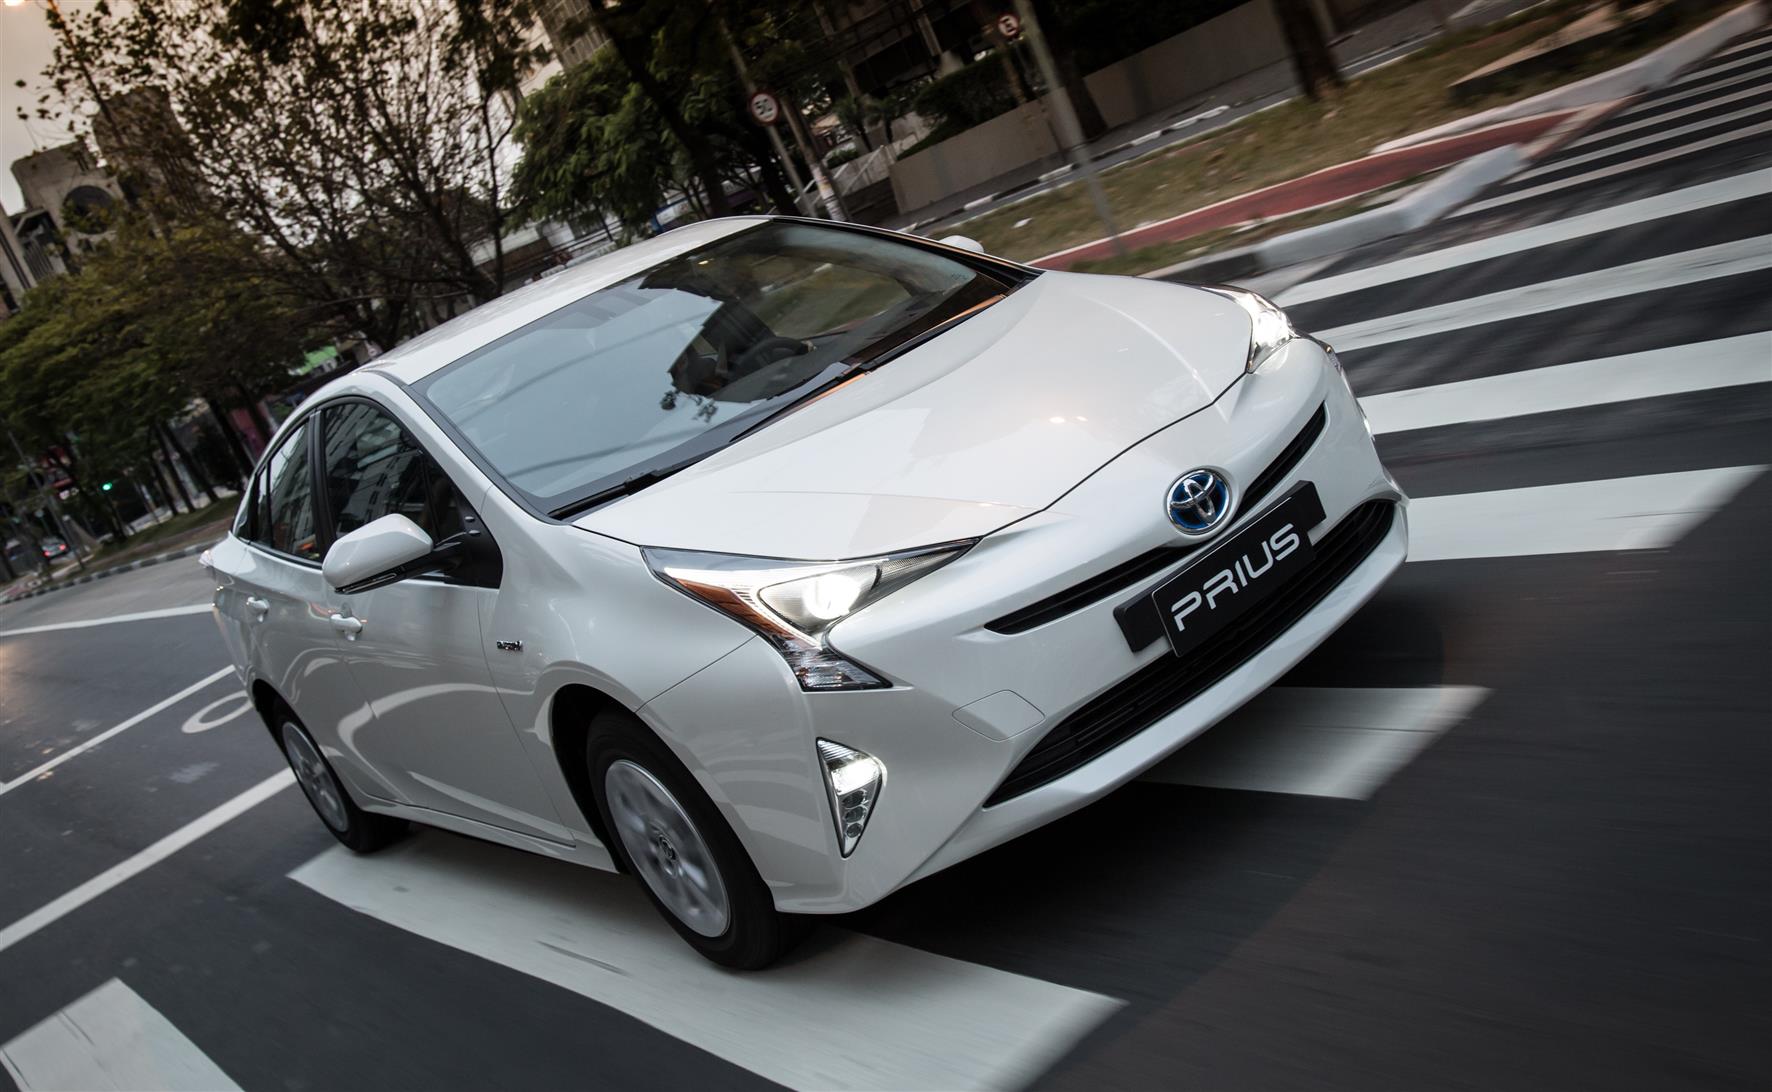 Toyota convoca Prius para reparo no sistema híbrido